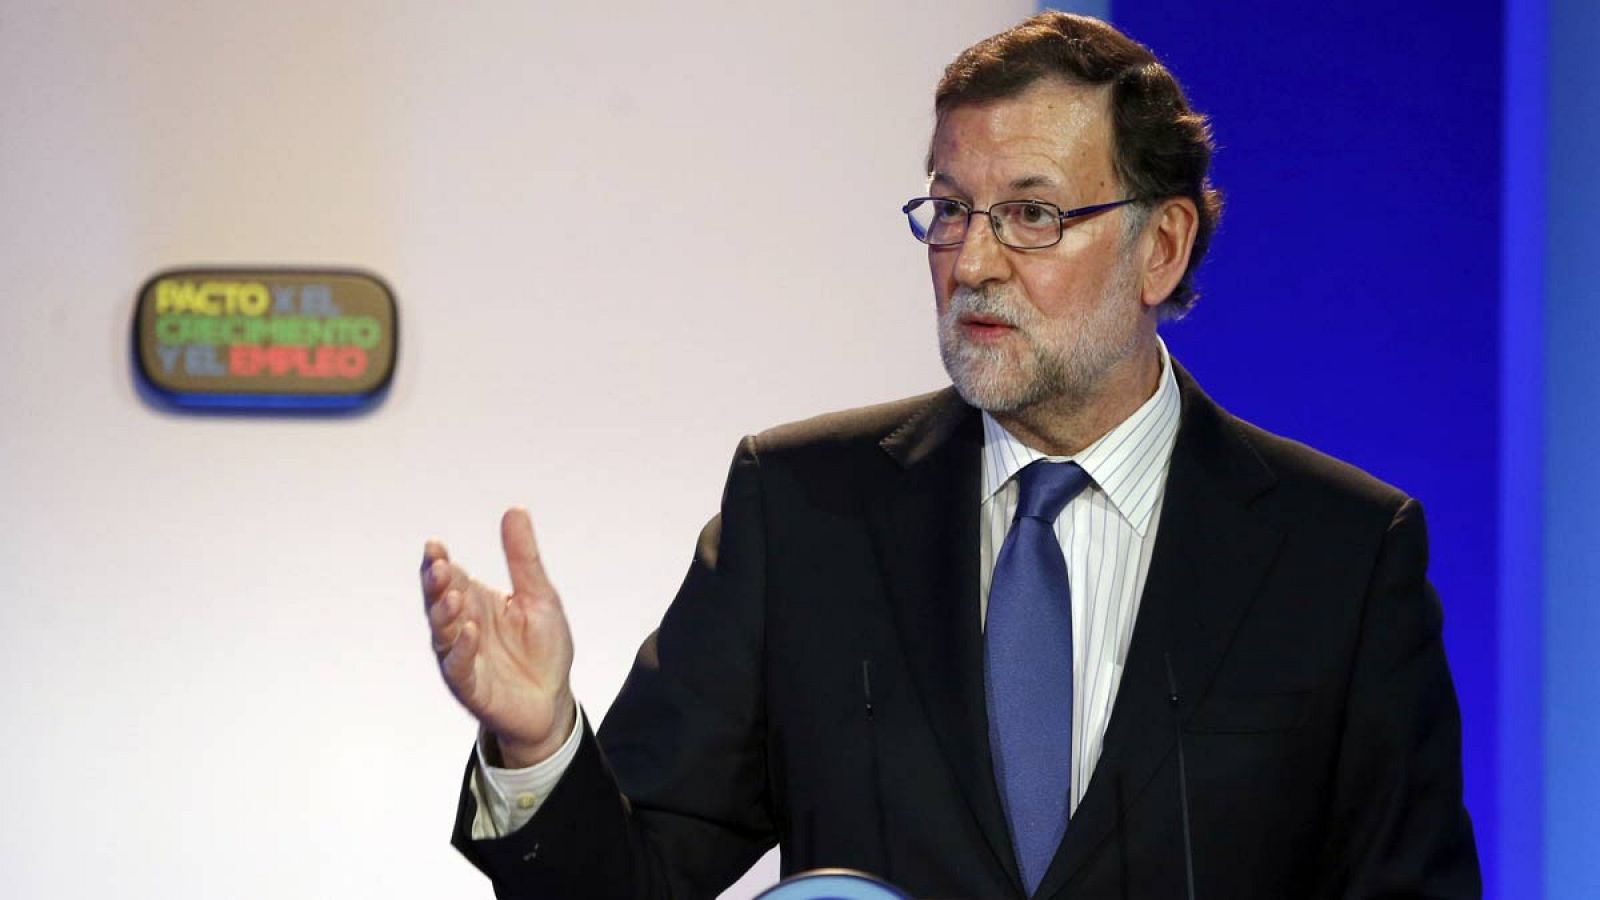 El presidente del Gobierno en funciones, Mariano Rajoy, durante su intervención en la clausura de la convención de empleo.ura sobre el empleo.